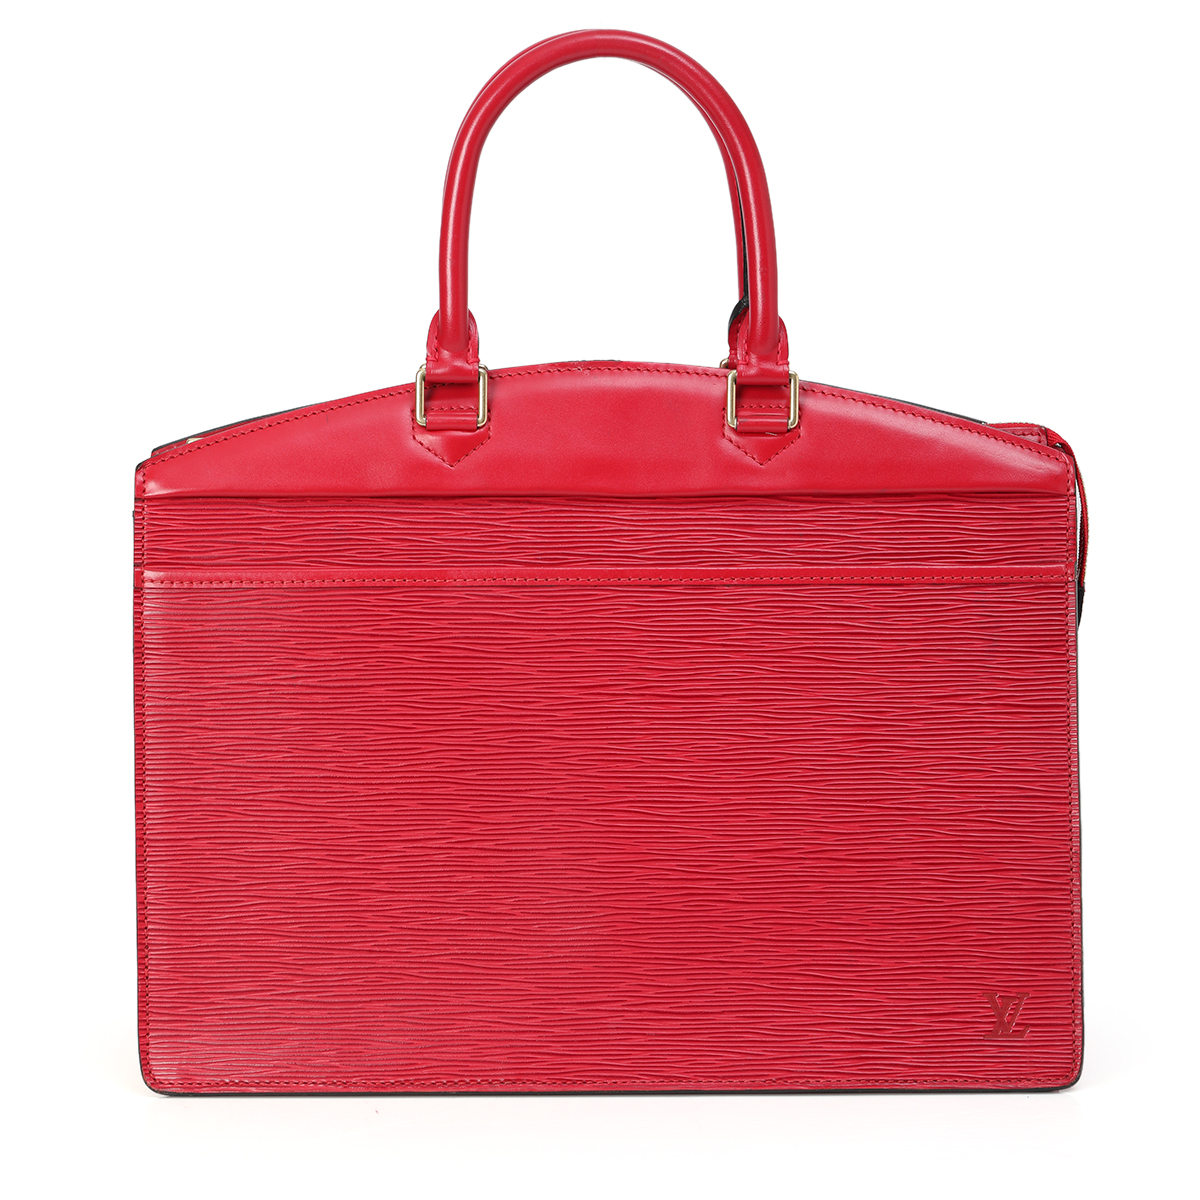 Louis Vuitton Epi Riviera Handle Bag One Size